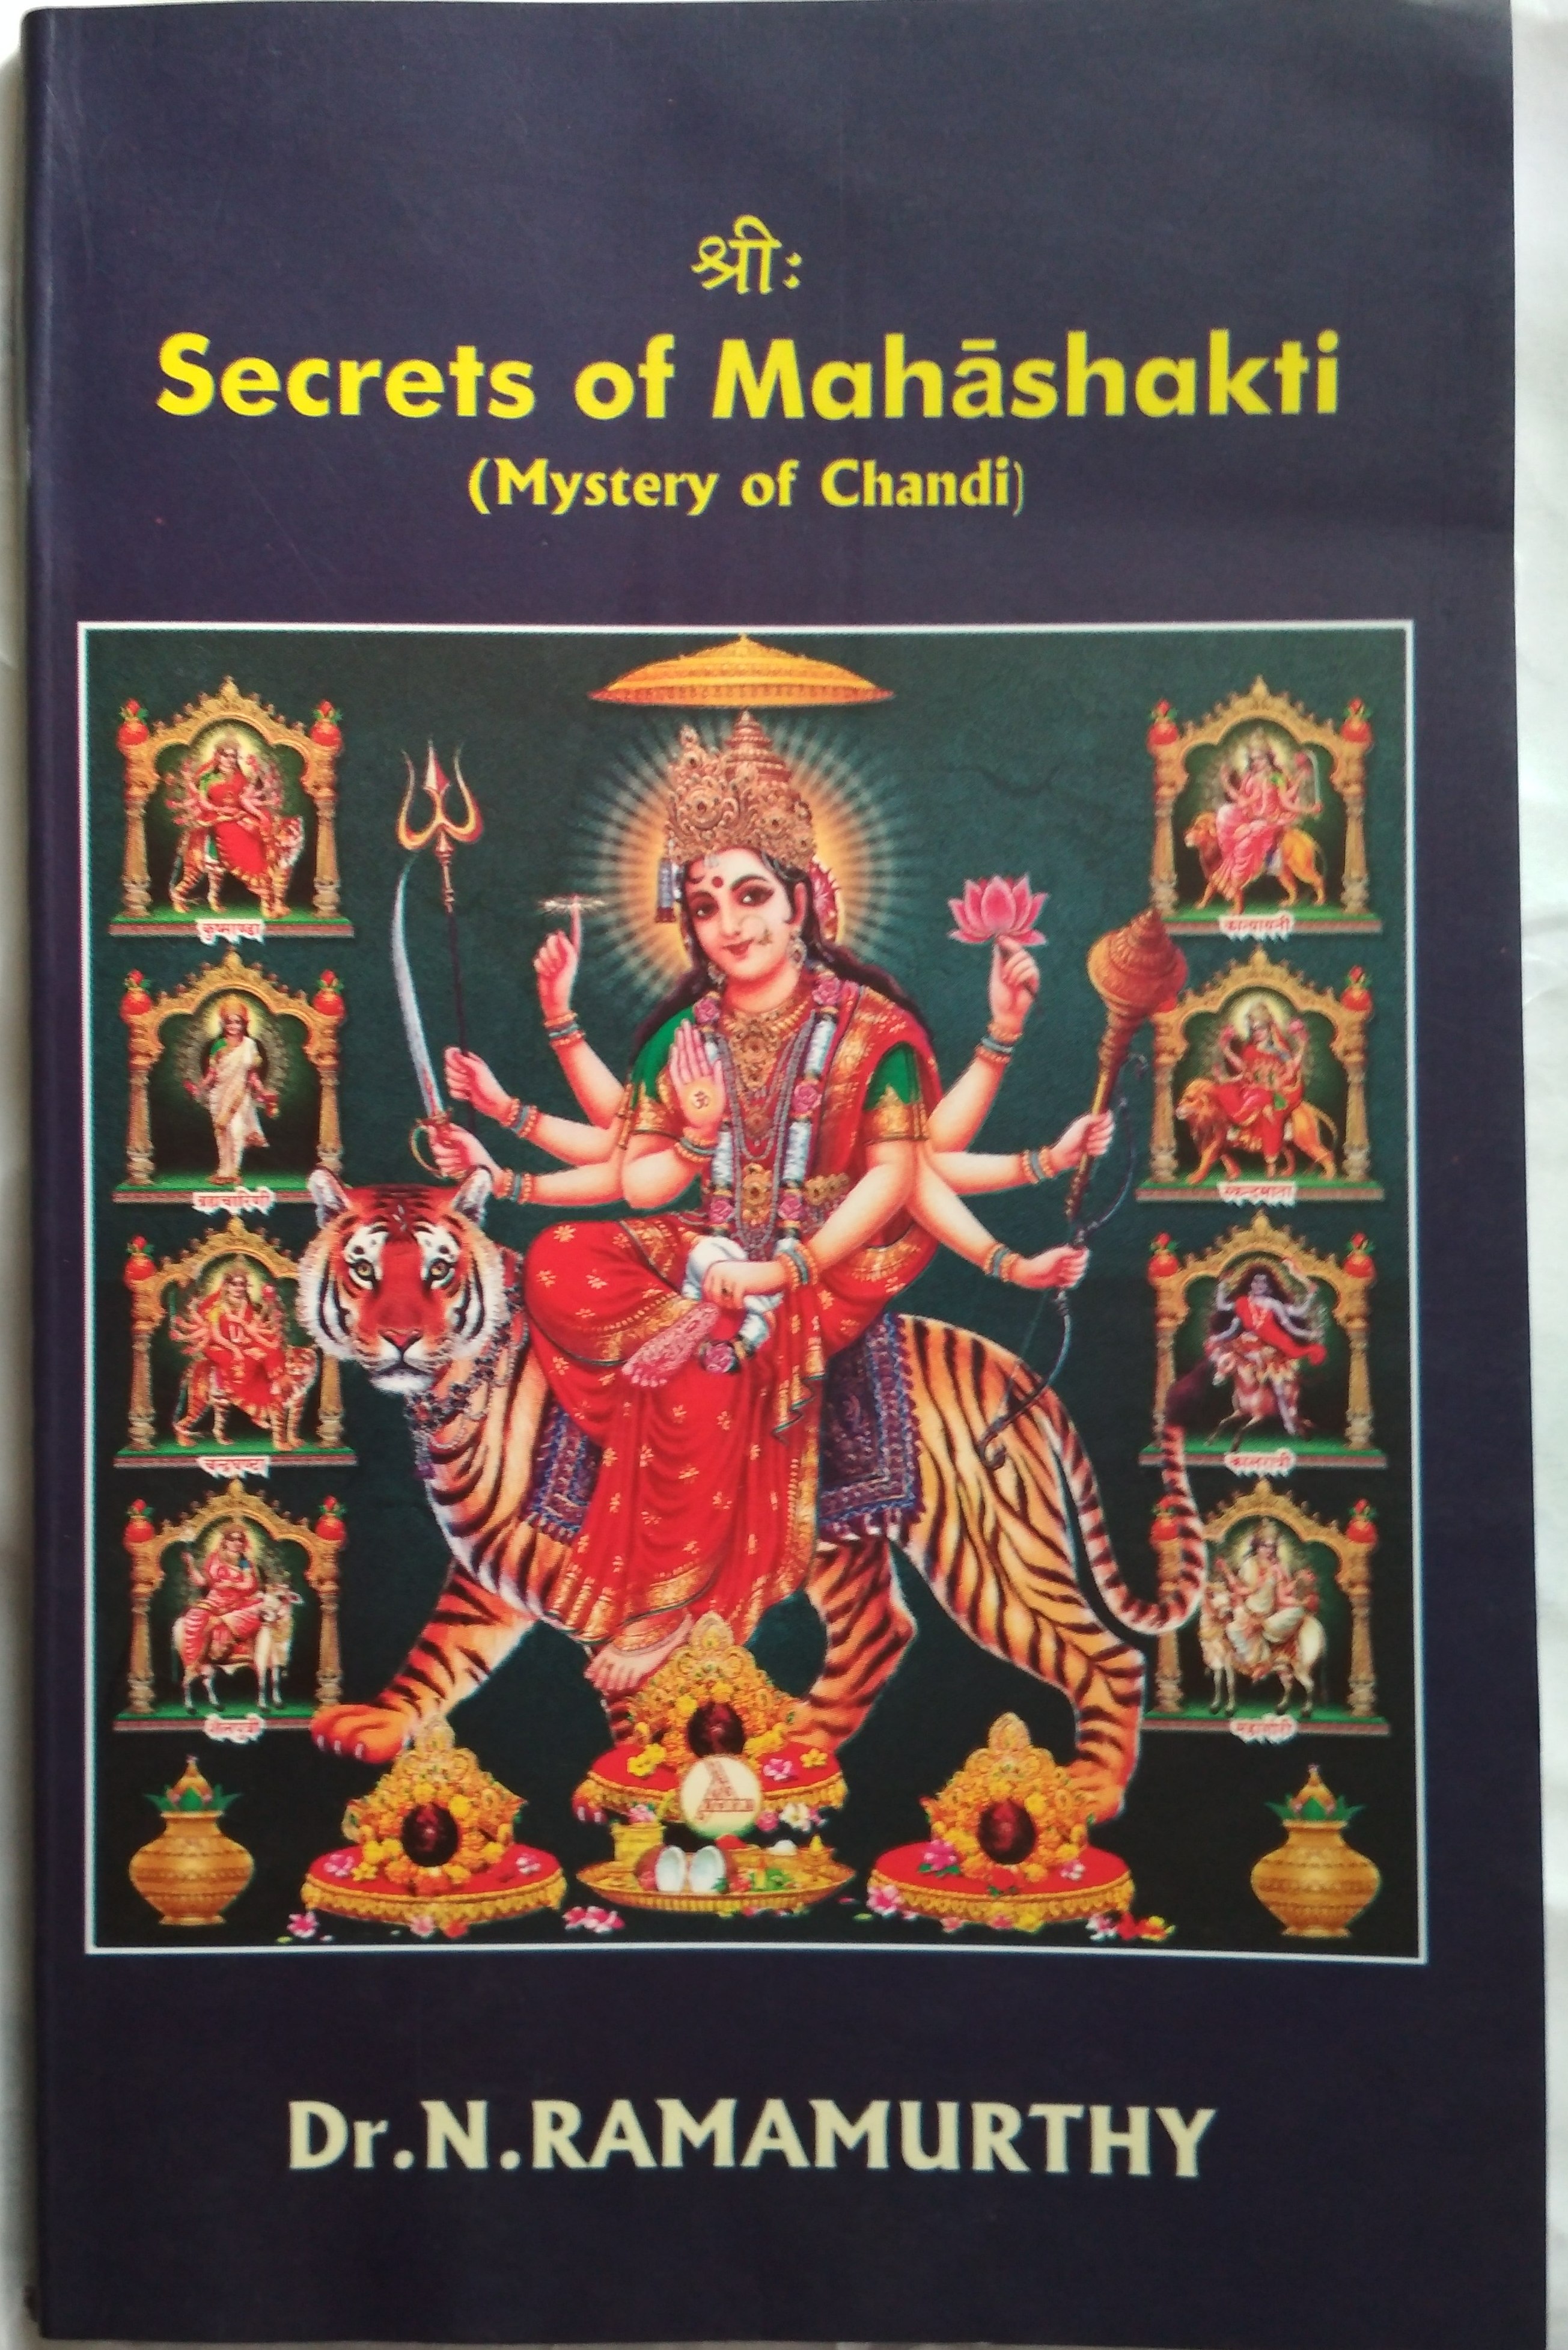 Secrets of Mahashakti - Mystery of Chandi